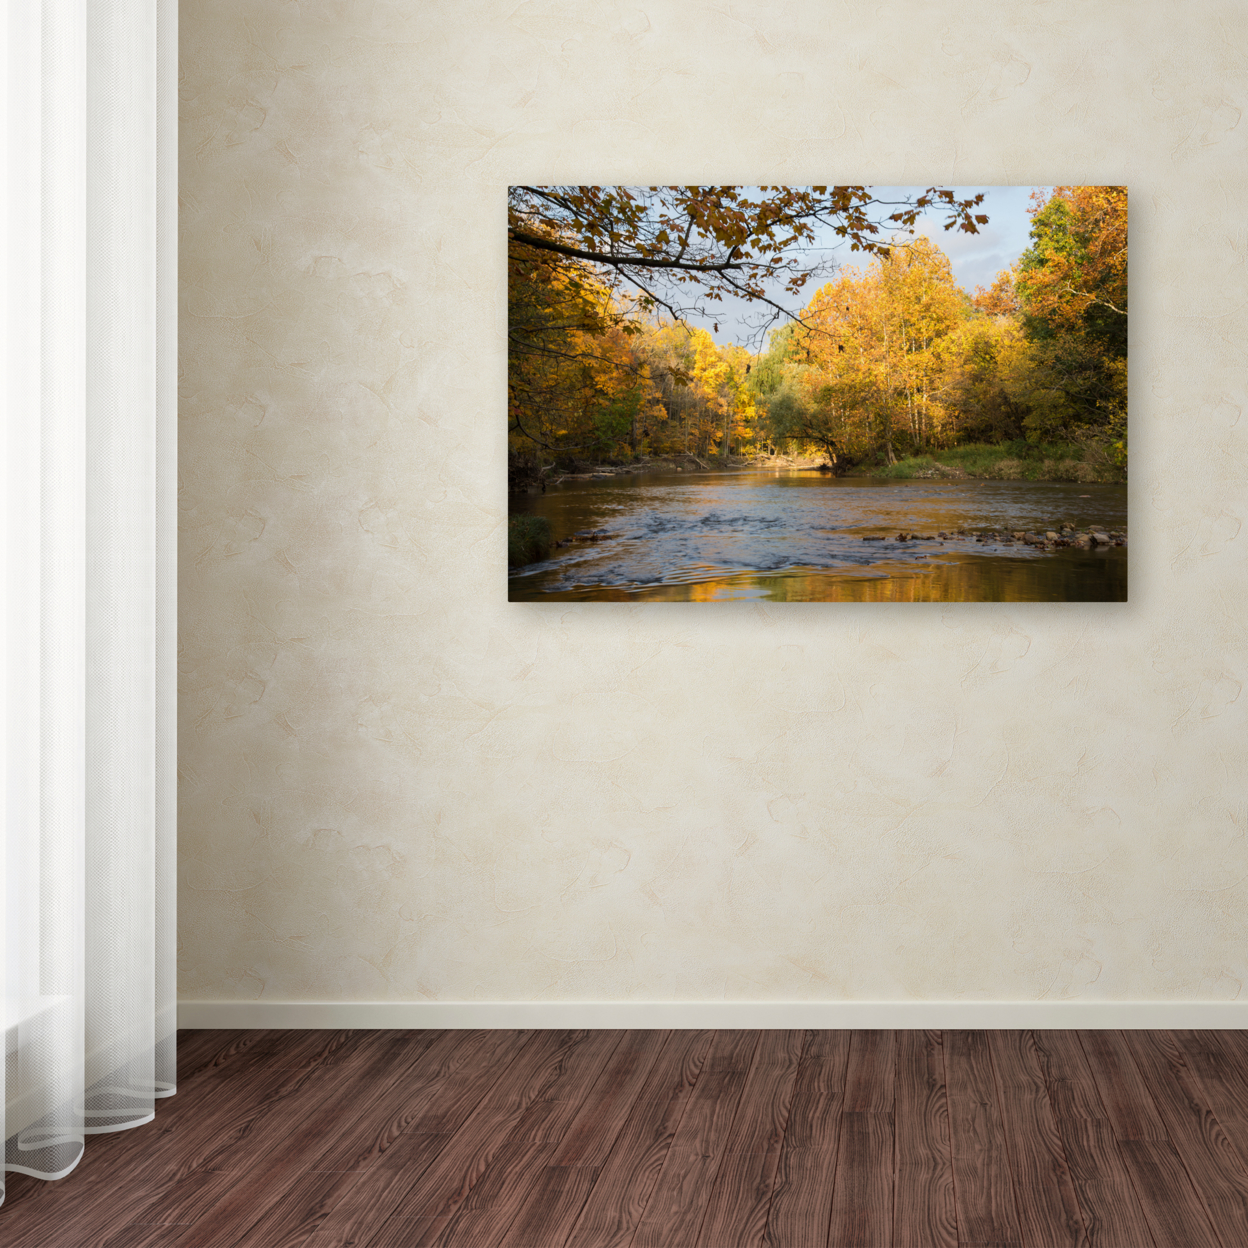 Kurt Shaffer 'Golden Autumn River' Canvas Art 16 X 24